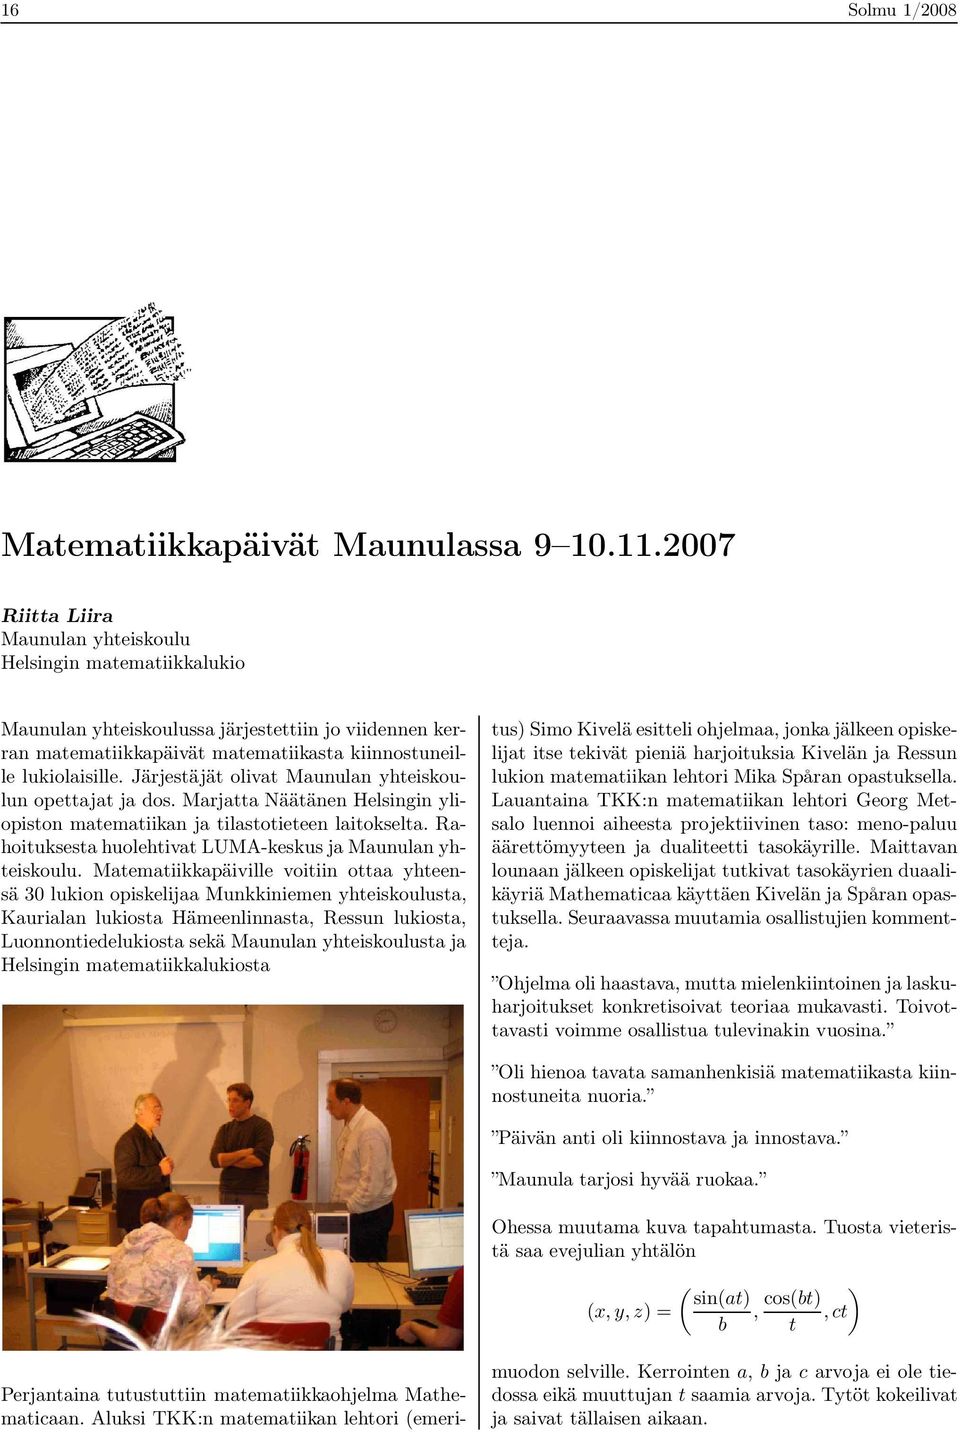 Järjestäjät olivat Maunulan yhteiskoulun opettajat ja dos. Marjatta Näätänen Helsingin yliopiston matematiikan ja tilastotieteen laitokselta.